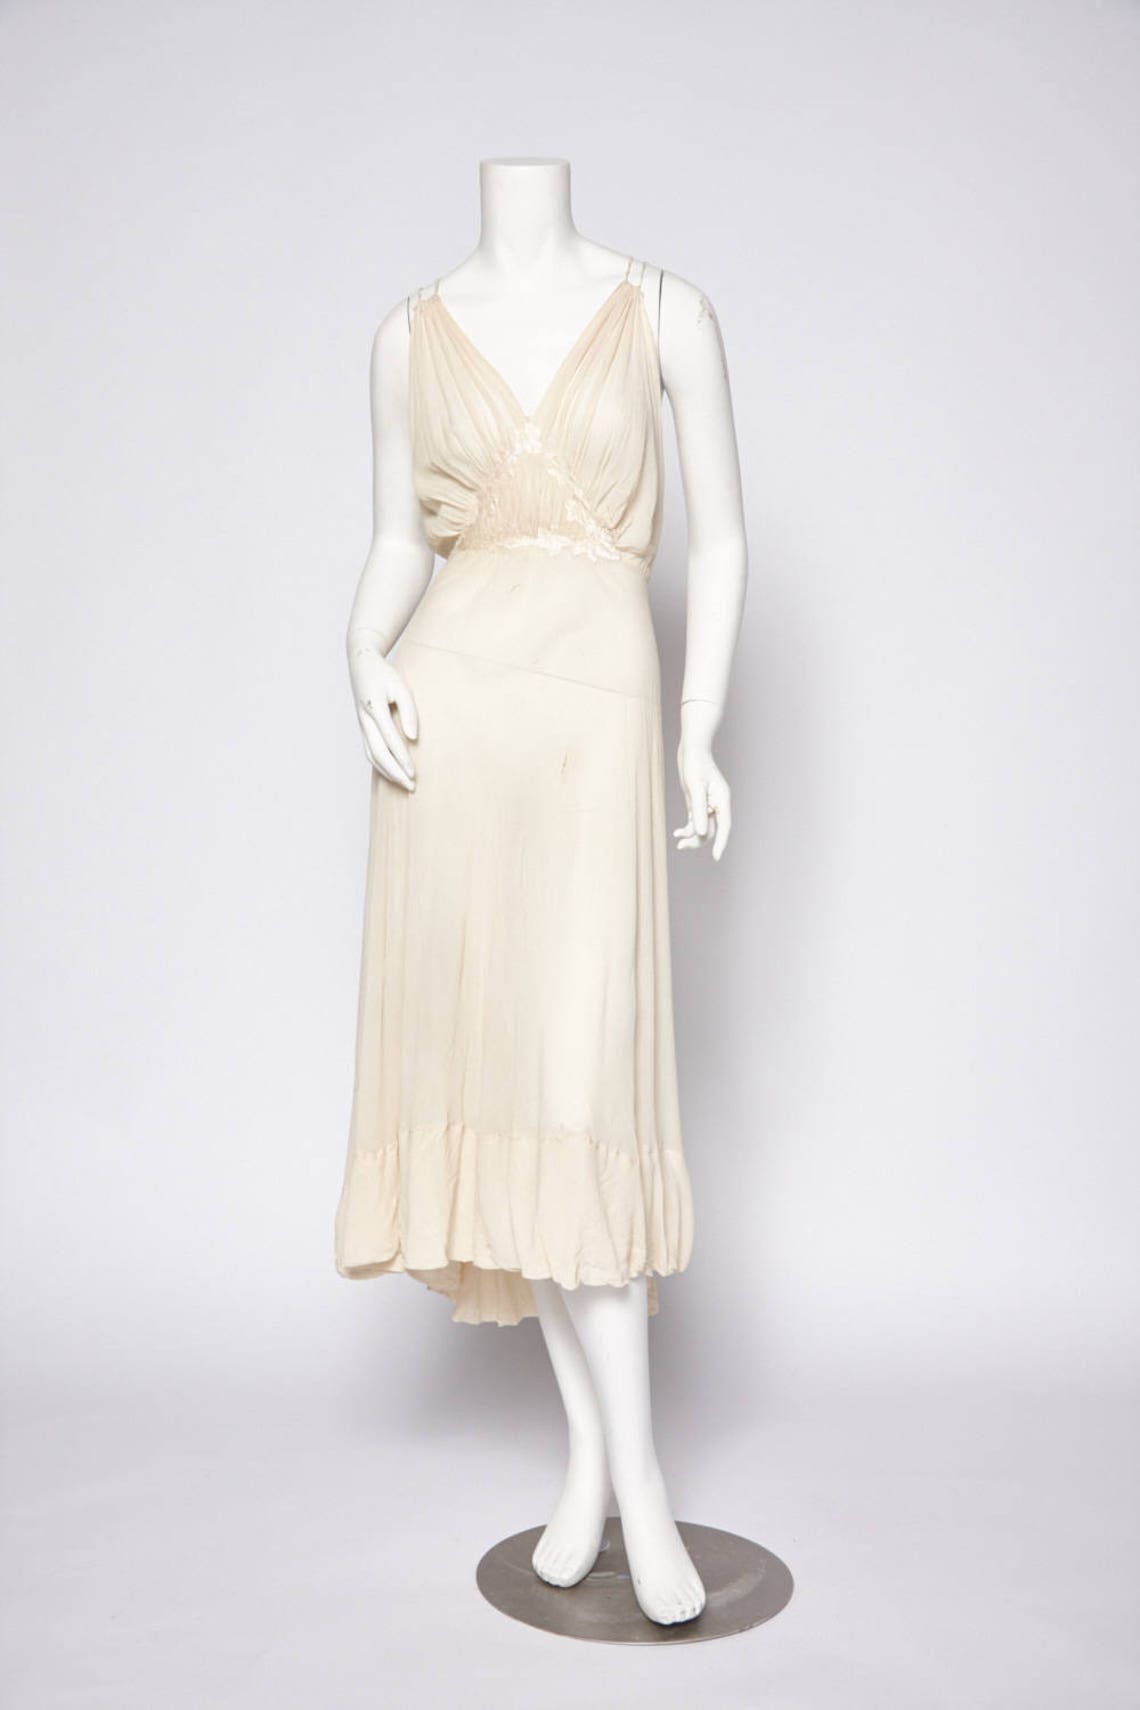 Lace dress slip vintage 1920s Revival Vintage Boutique | Etsy